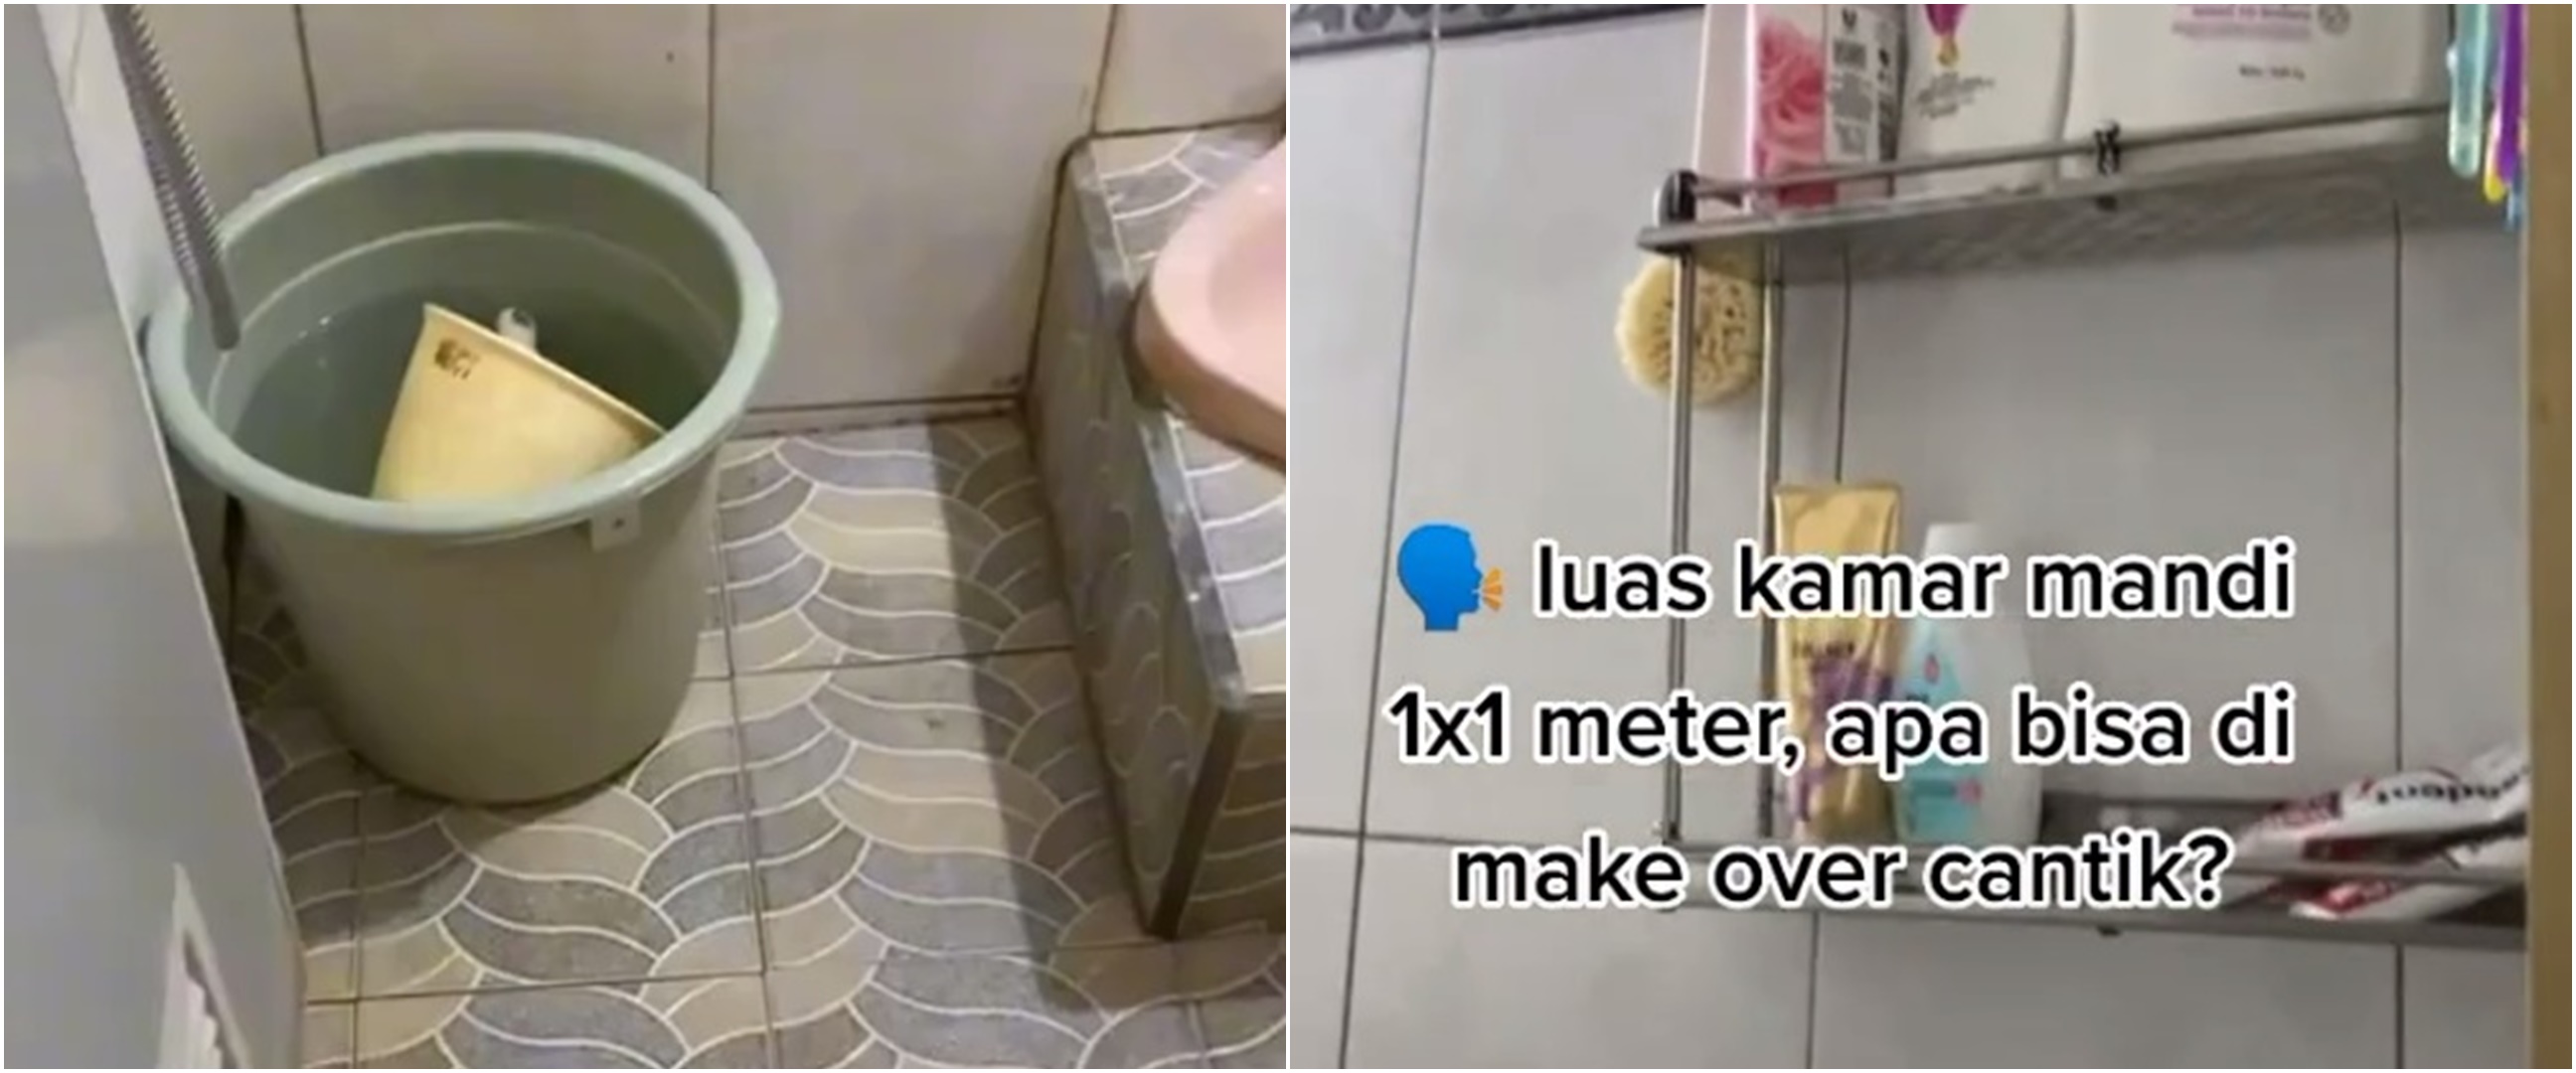 Kamar mandi ukuran 1x1 meter dimakeover jadi bak toilet hotel, hasilnya estetik pol